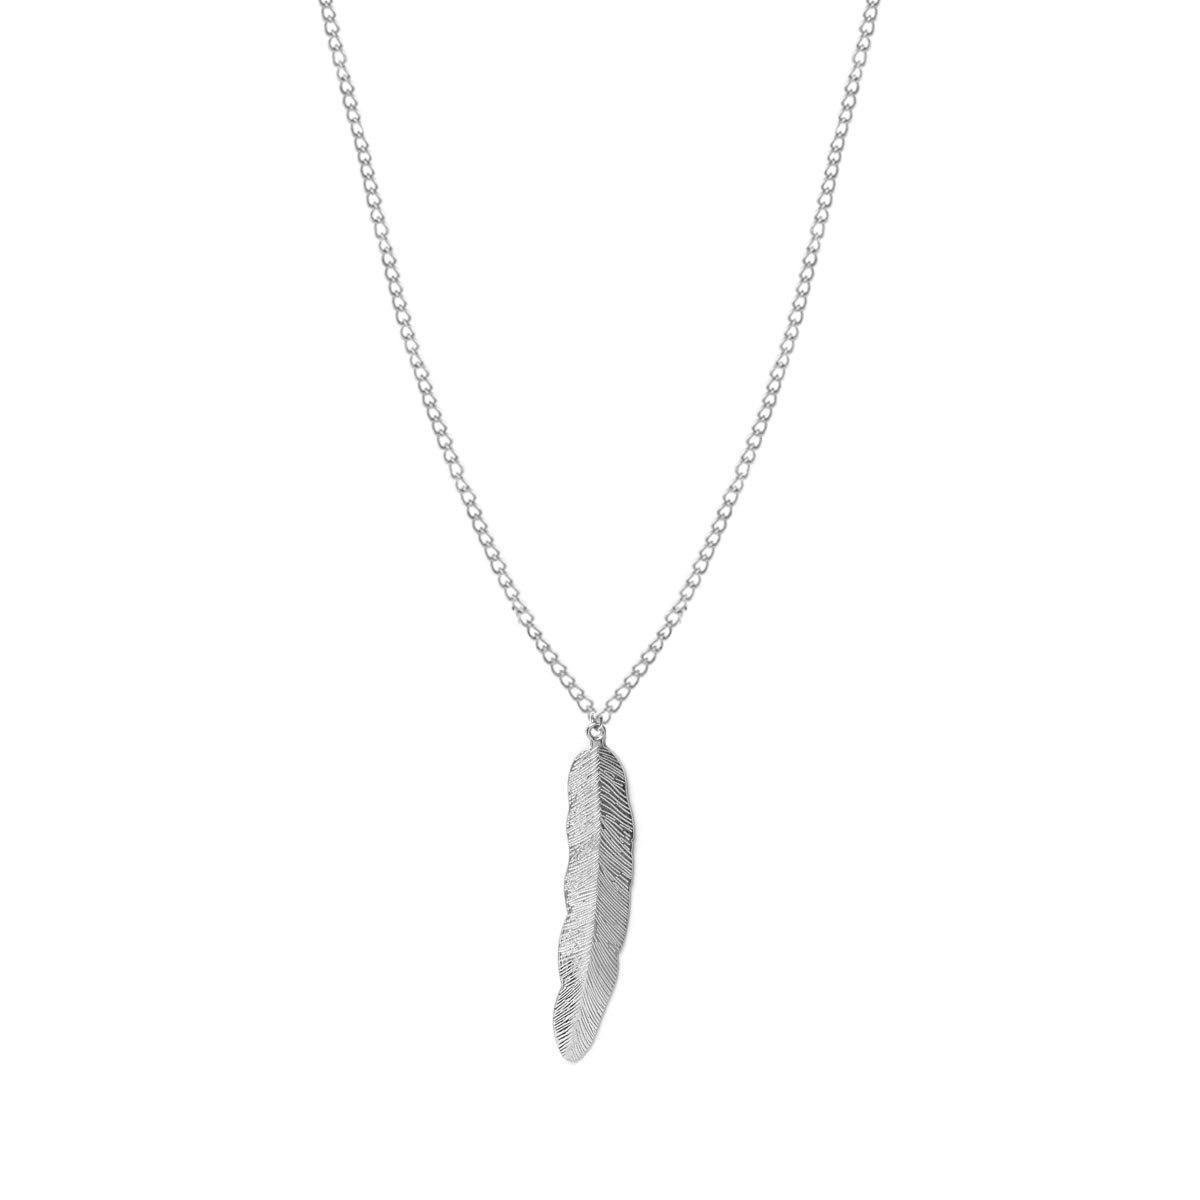 24/7 Jewelry Collection Veer Ketting - Dames - Bijou Legering Zilverkleurig - 60 cm